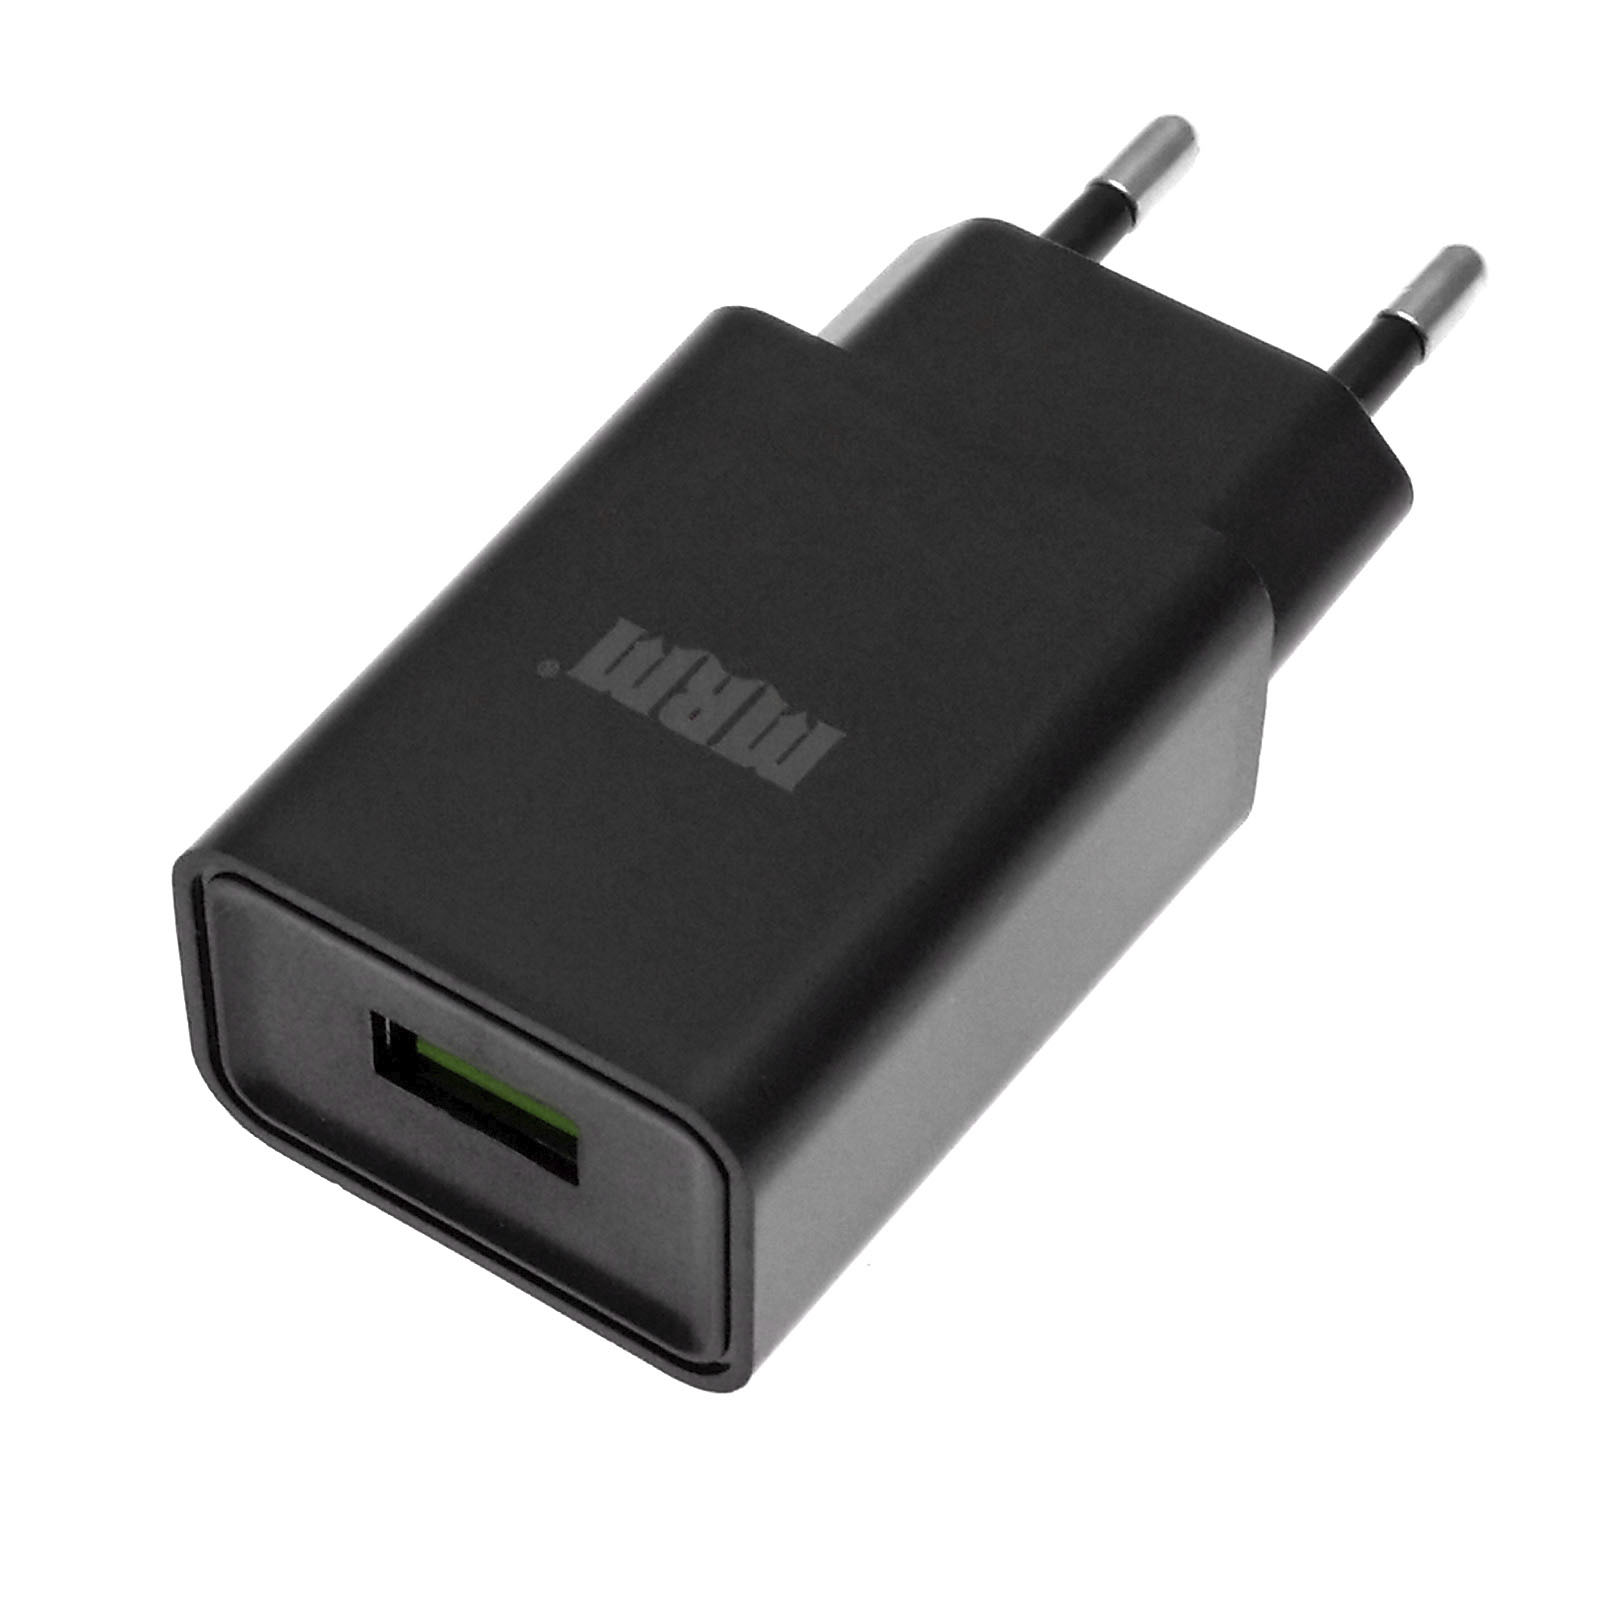 СЗУ (Сетевое зарядное устройство) MRM MR21, 2.1A, 1 USB, цвет черный